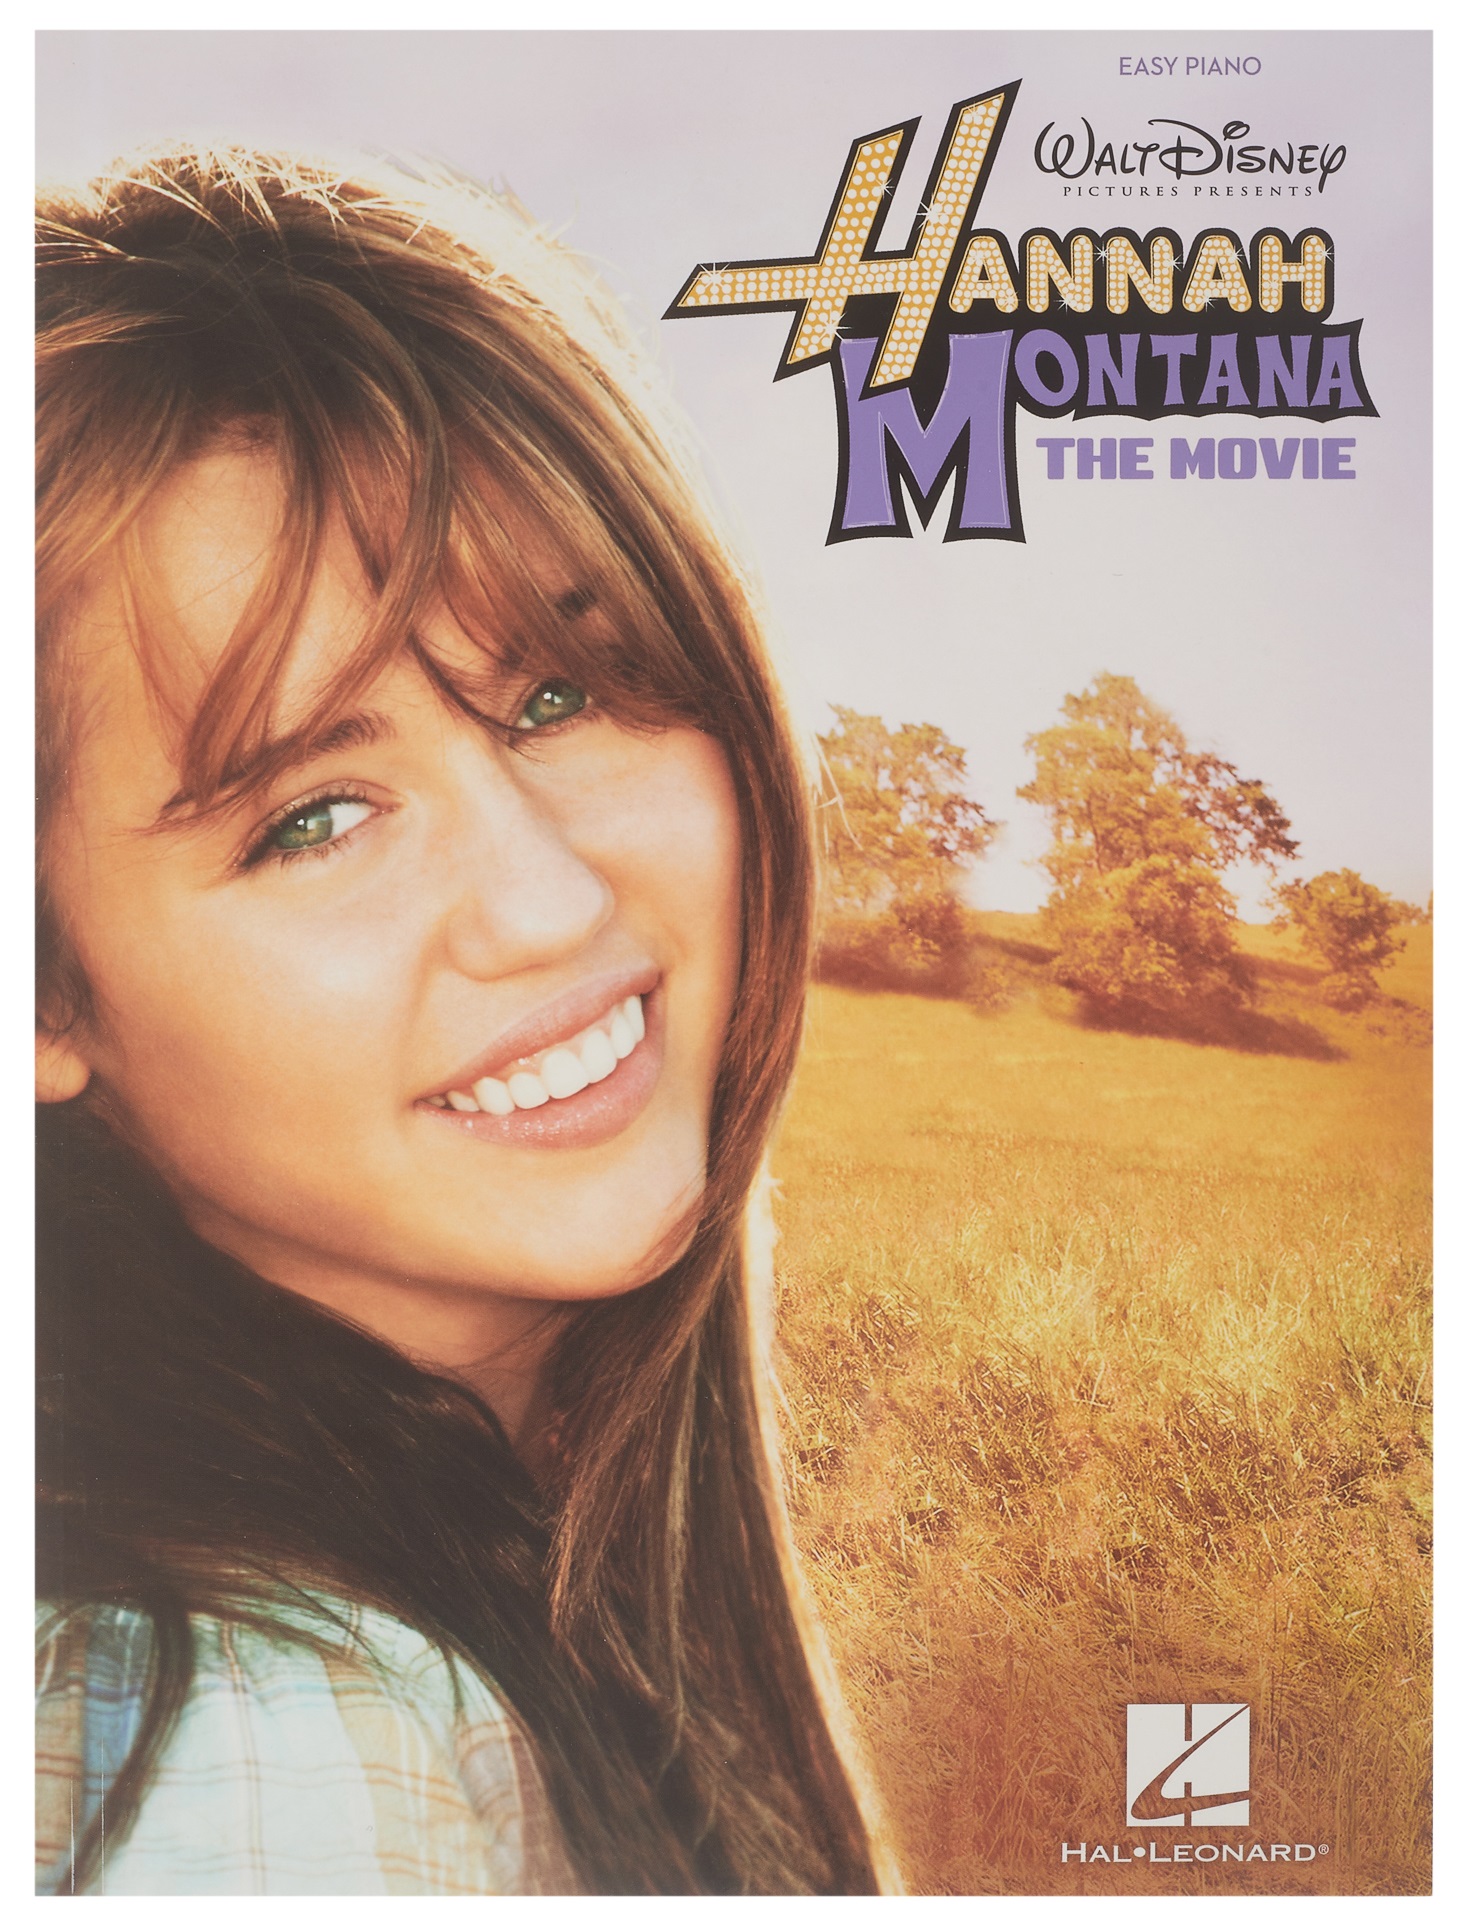 Fotografie MS Hannah Montana: The Movie (Easy Piano)